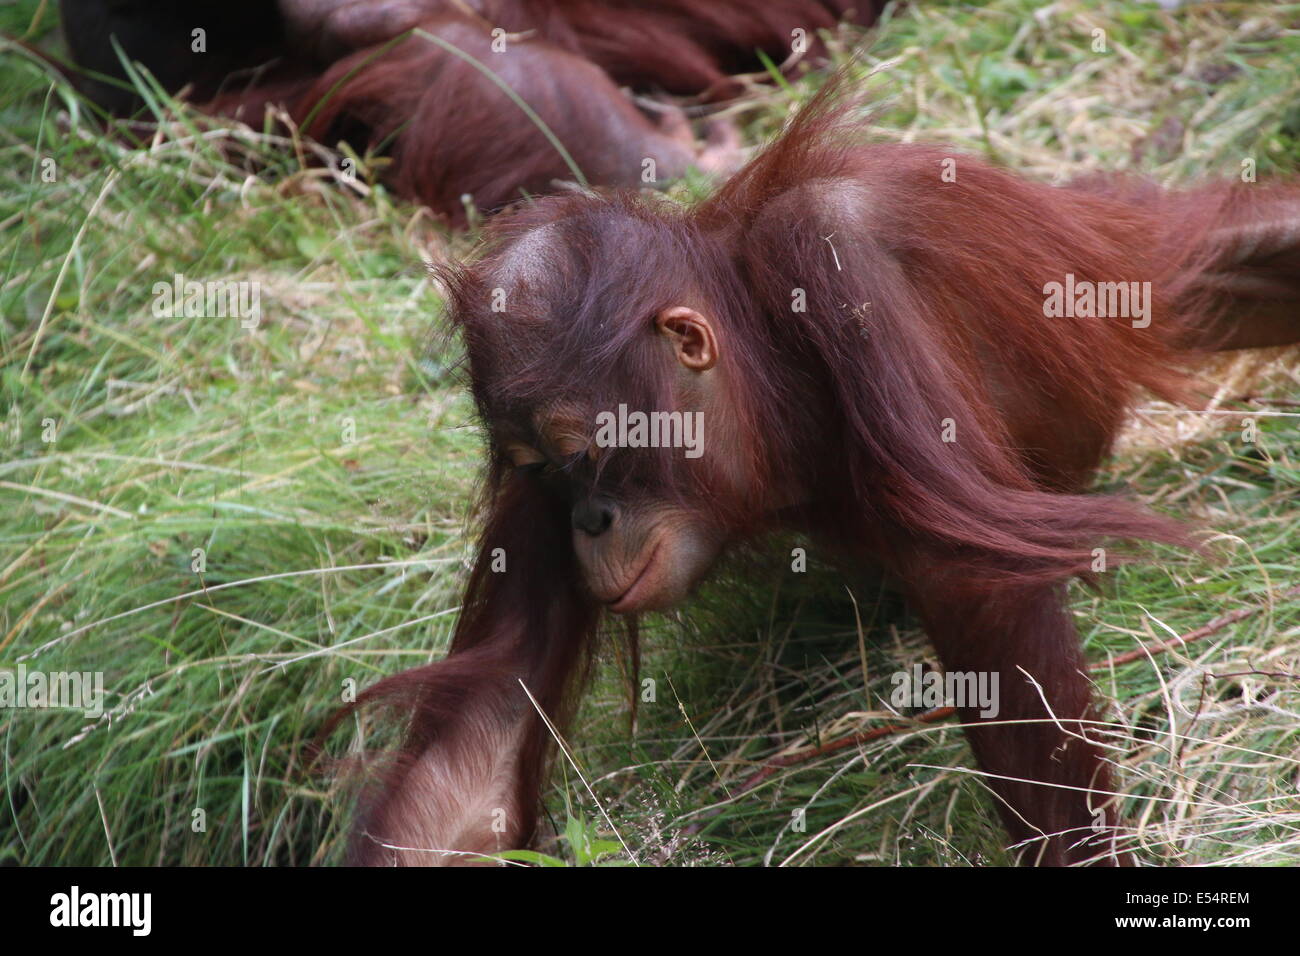 L'orang-outan de Bornéo pour mineurs (Pongo pygmaeus) à Apenheul Primate Zoo, Apeldoorn, Pays-Bas Banque D'Images